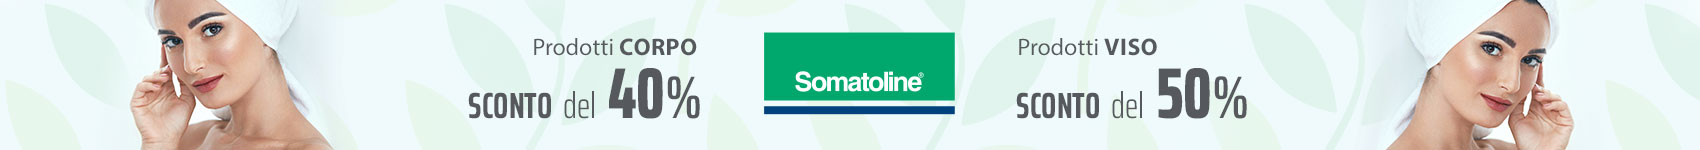 Somatoline: Prodotti corpo sconto del 40% | Prodotti visosconto del 50 %